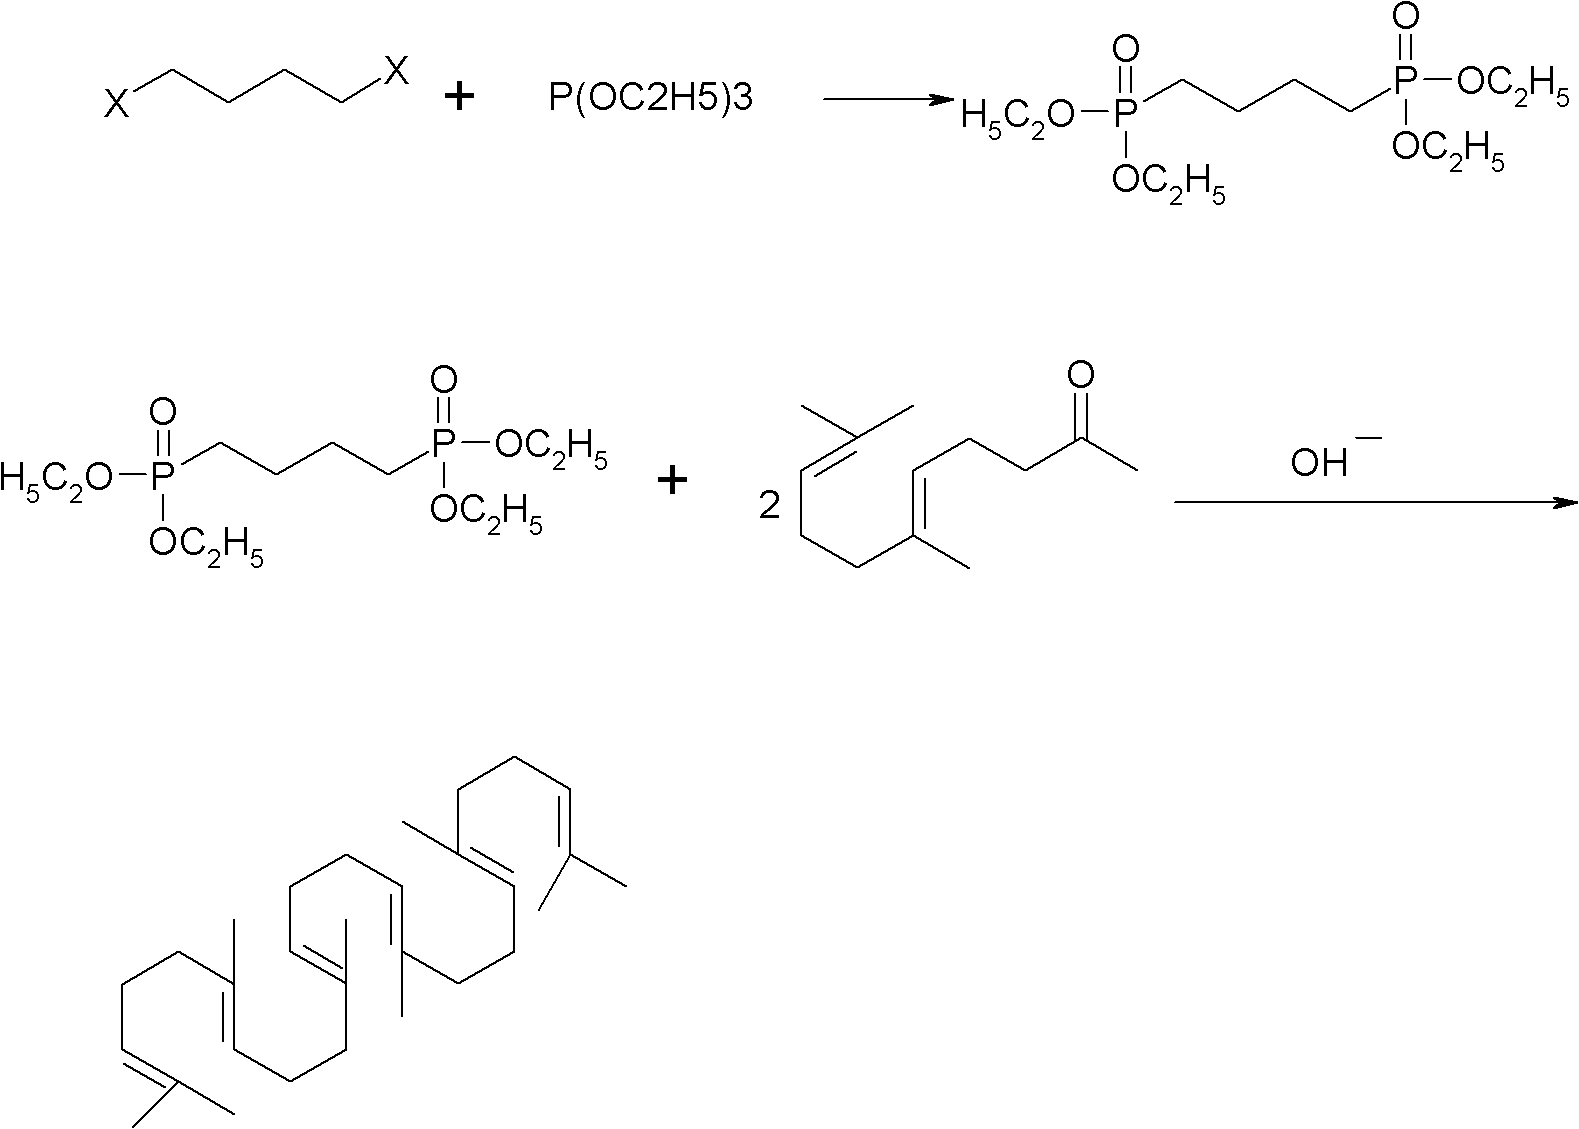 Method for synthesizing squalene